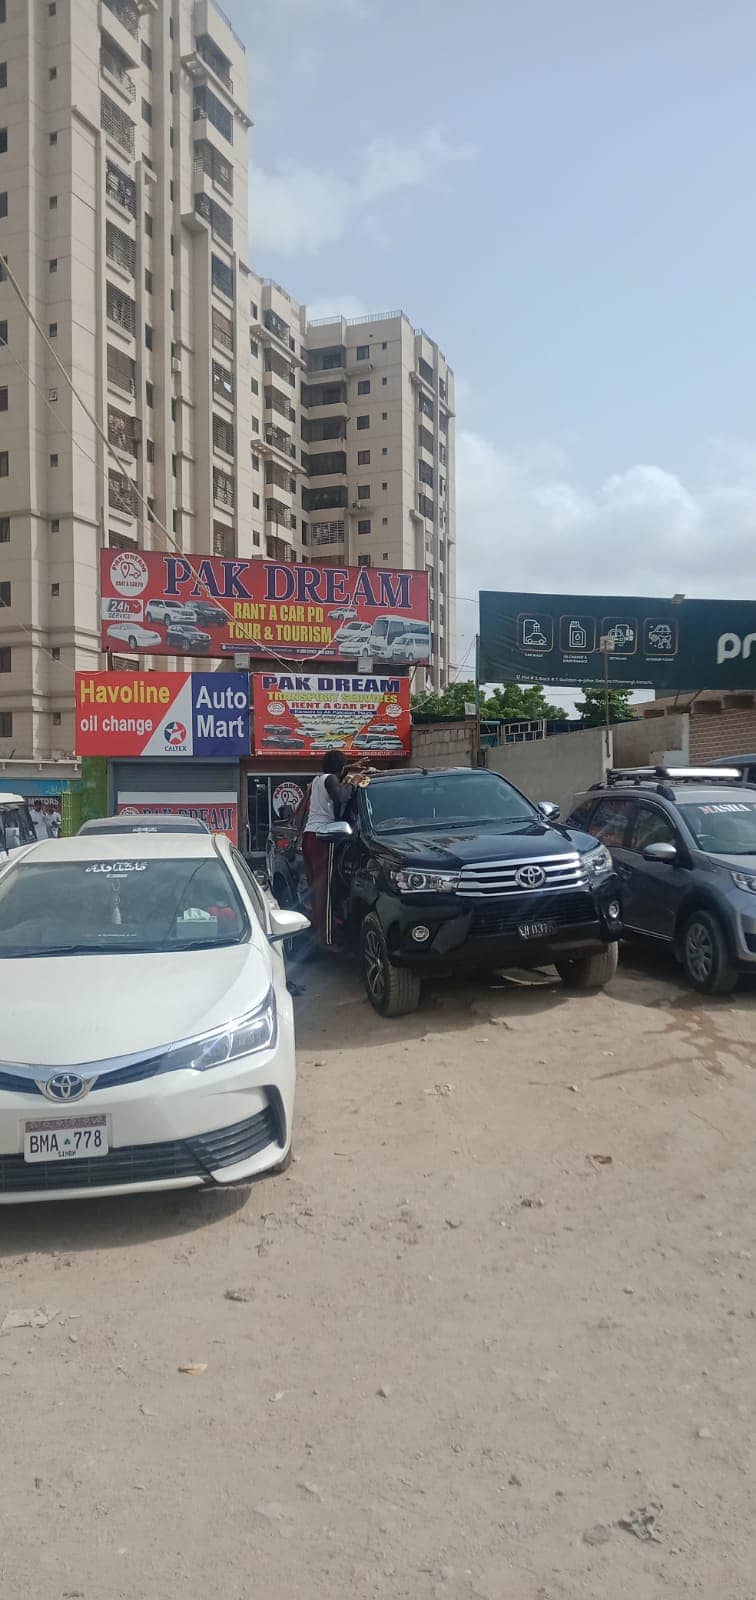 Rent a car | Car rental | Rent a car service in Karachi 8